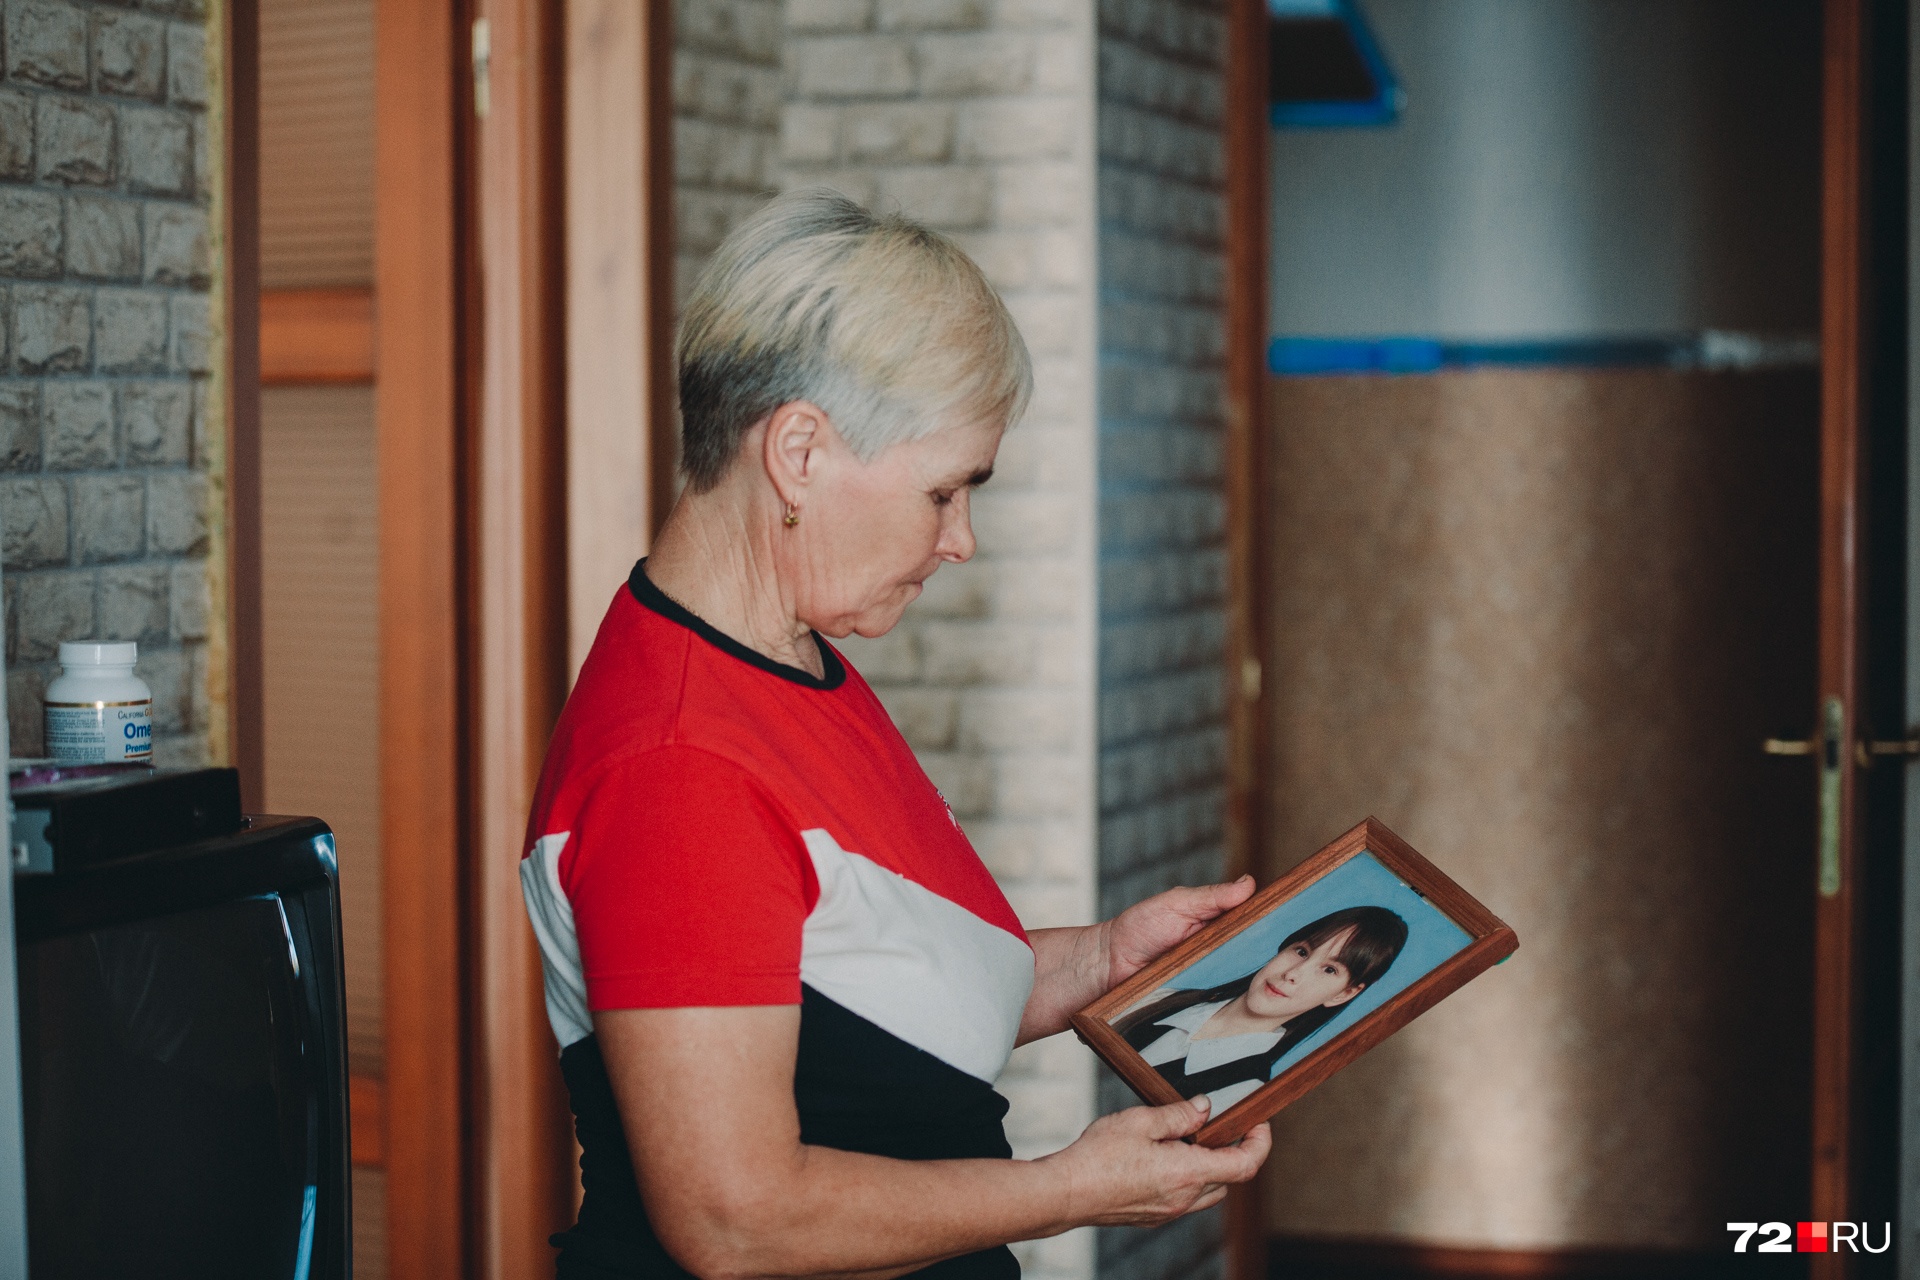 Людмила Ложкина после пропажи дочери рассылала письма в детские дома и приюты в надежде, что в таких местах оказалась ее девочка. Из всех мест, куда обращалась женщина, пришли отрицательные ответы